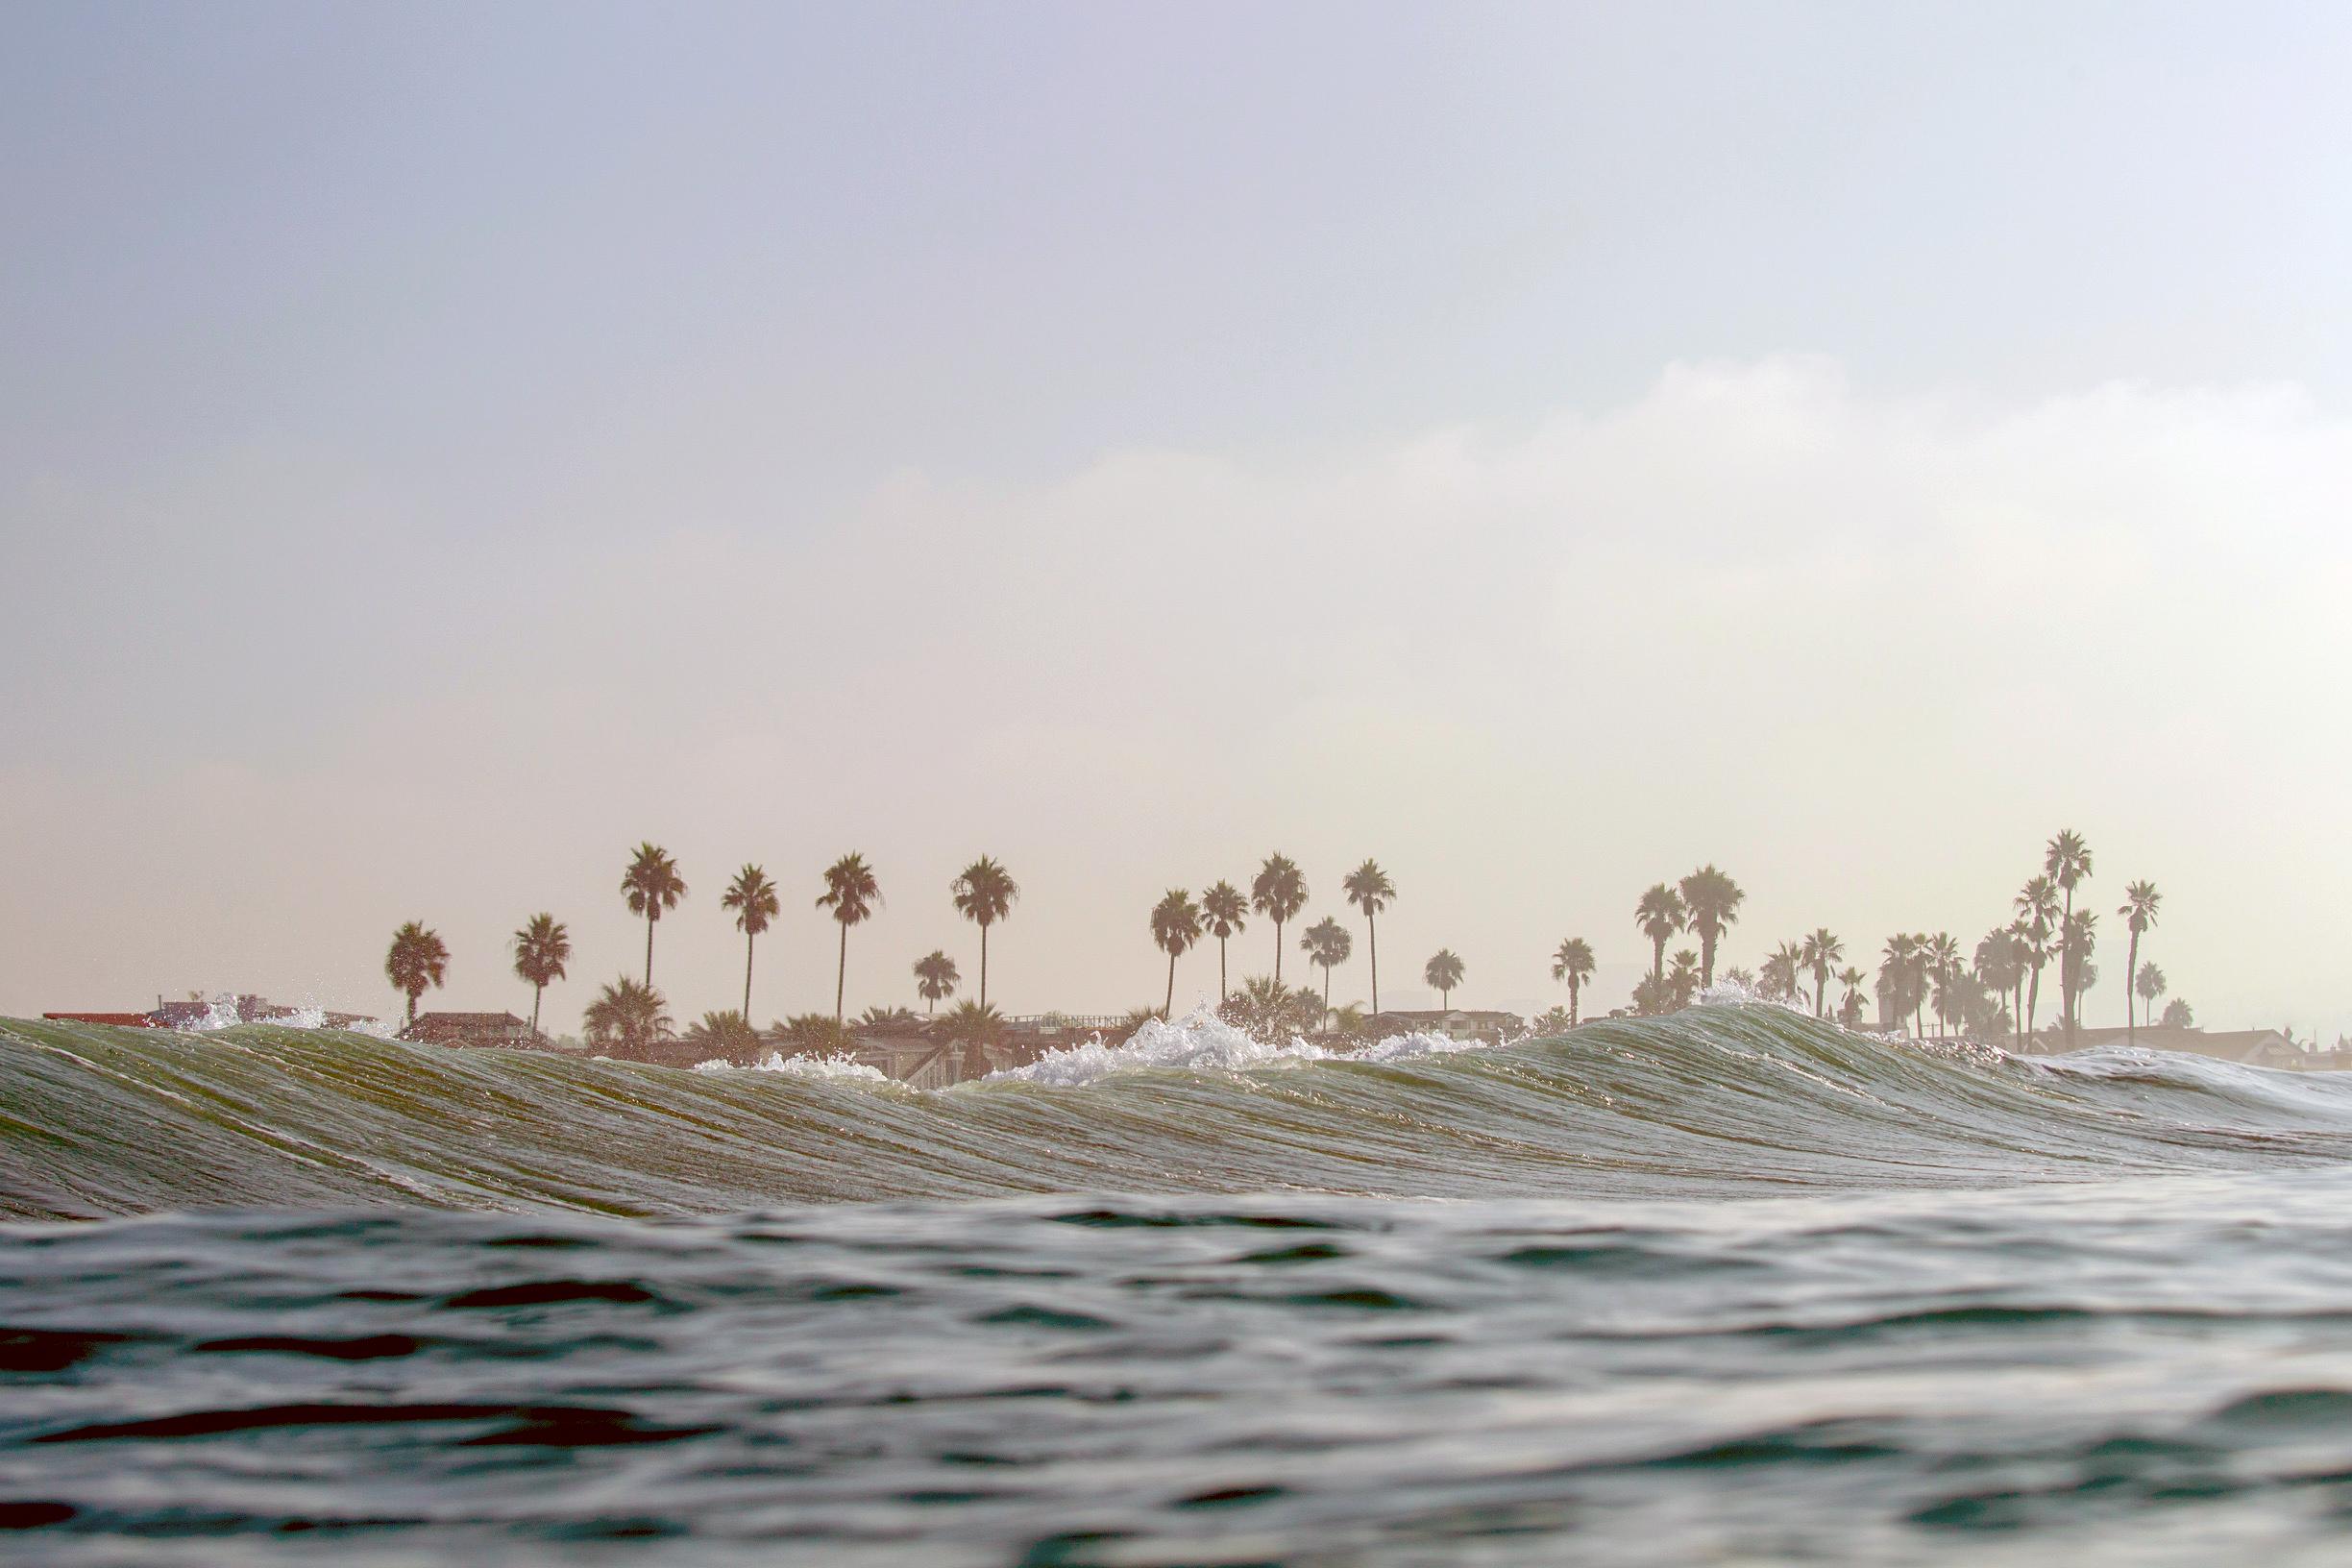 Color Photograph Jonathan Spector - Lost In Paradise, photographie d'art de paysage océanique, encadrée en plexiglas 